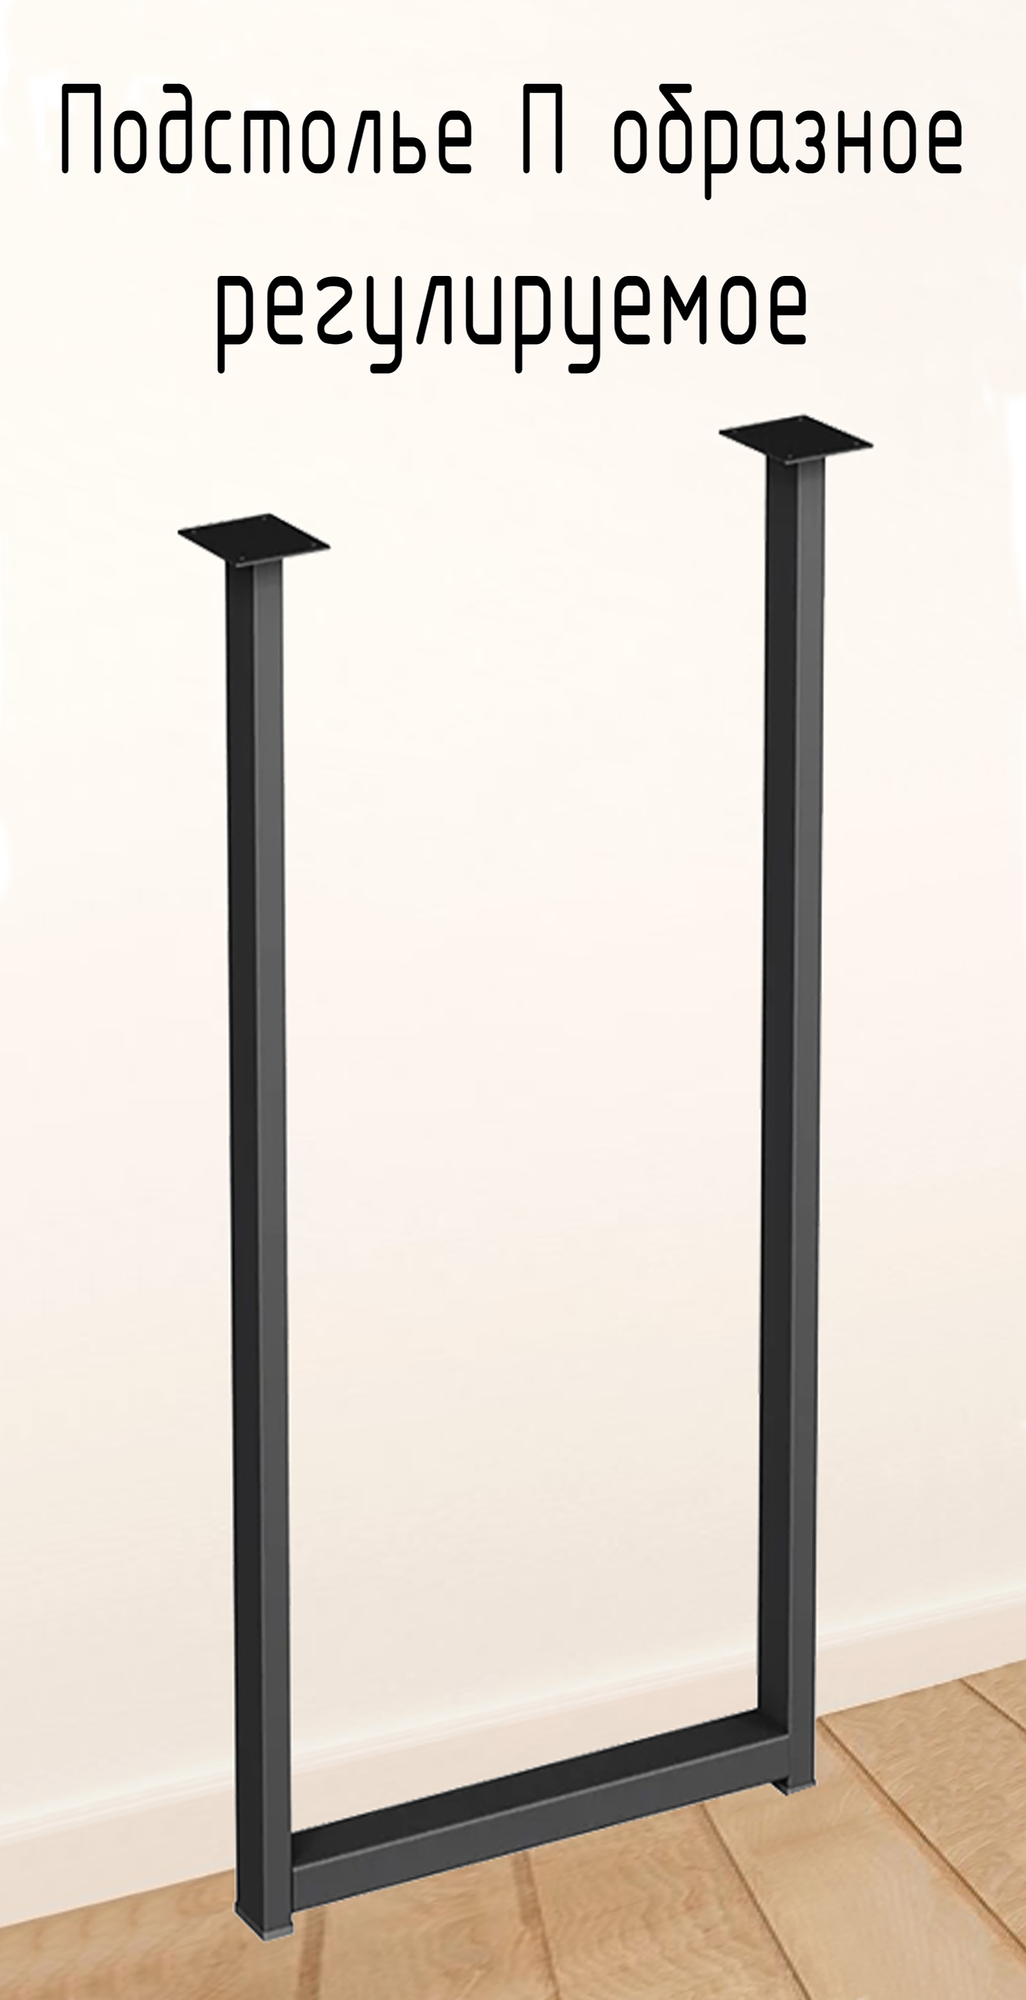 Подстолье для стола 870 350 50 мм П образное регулируемое Лофт прямоугольное металлическое барное 1 шт.